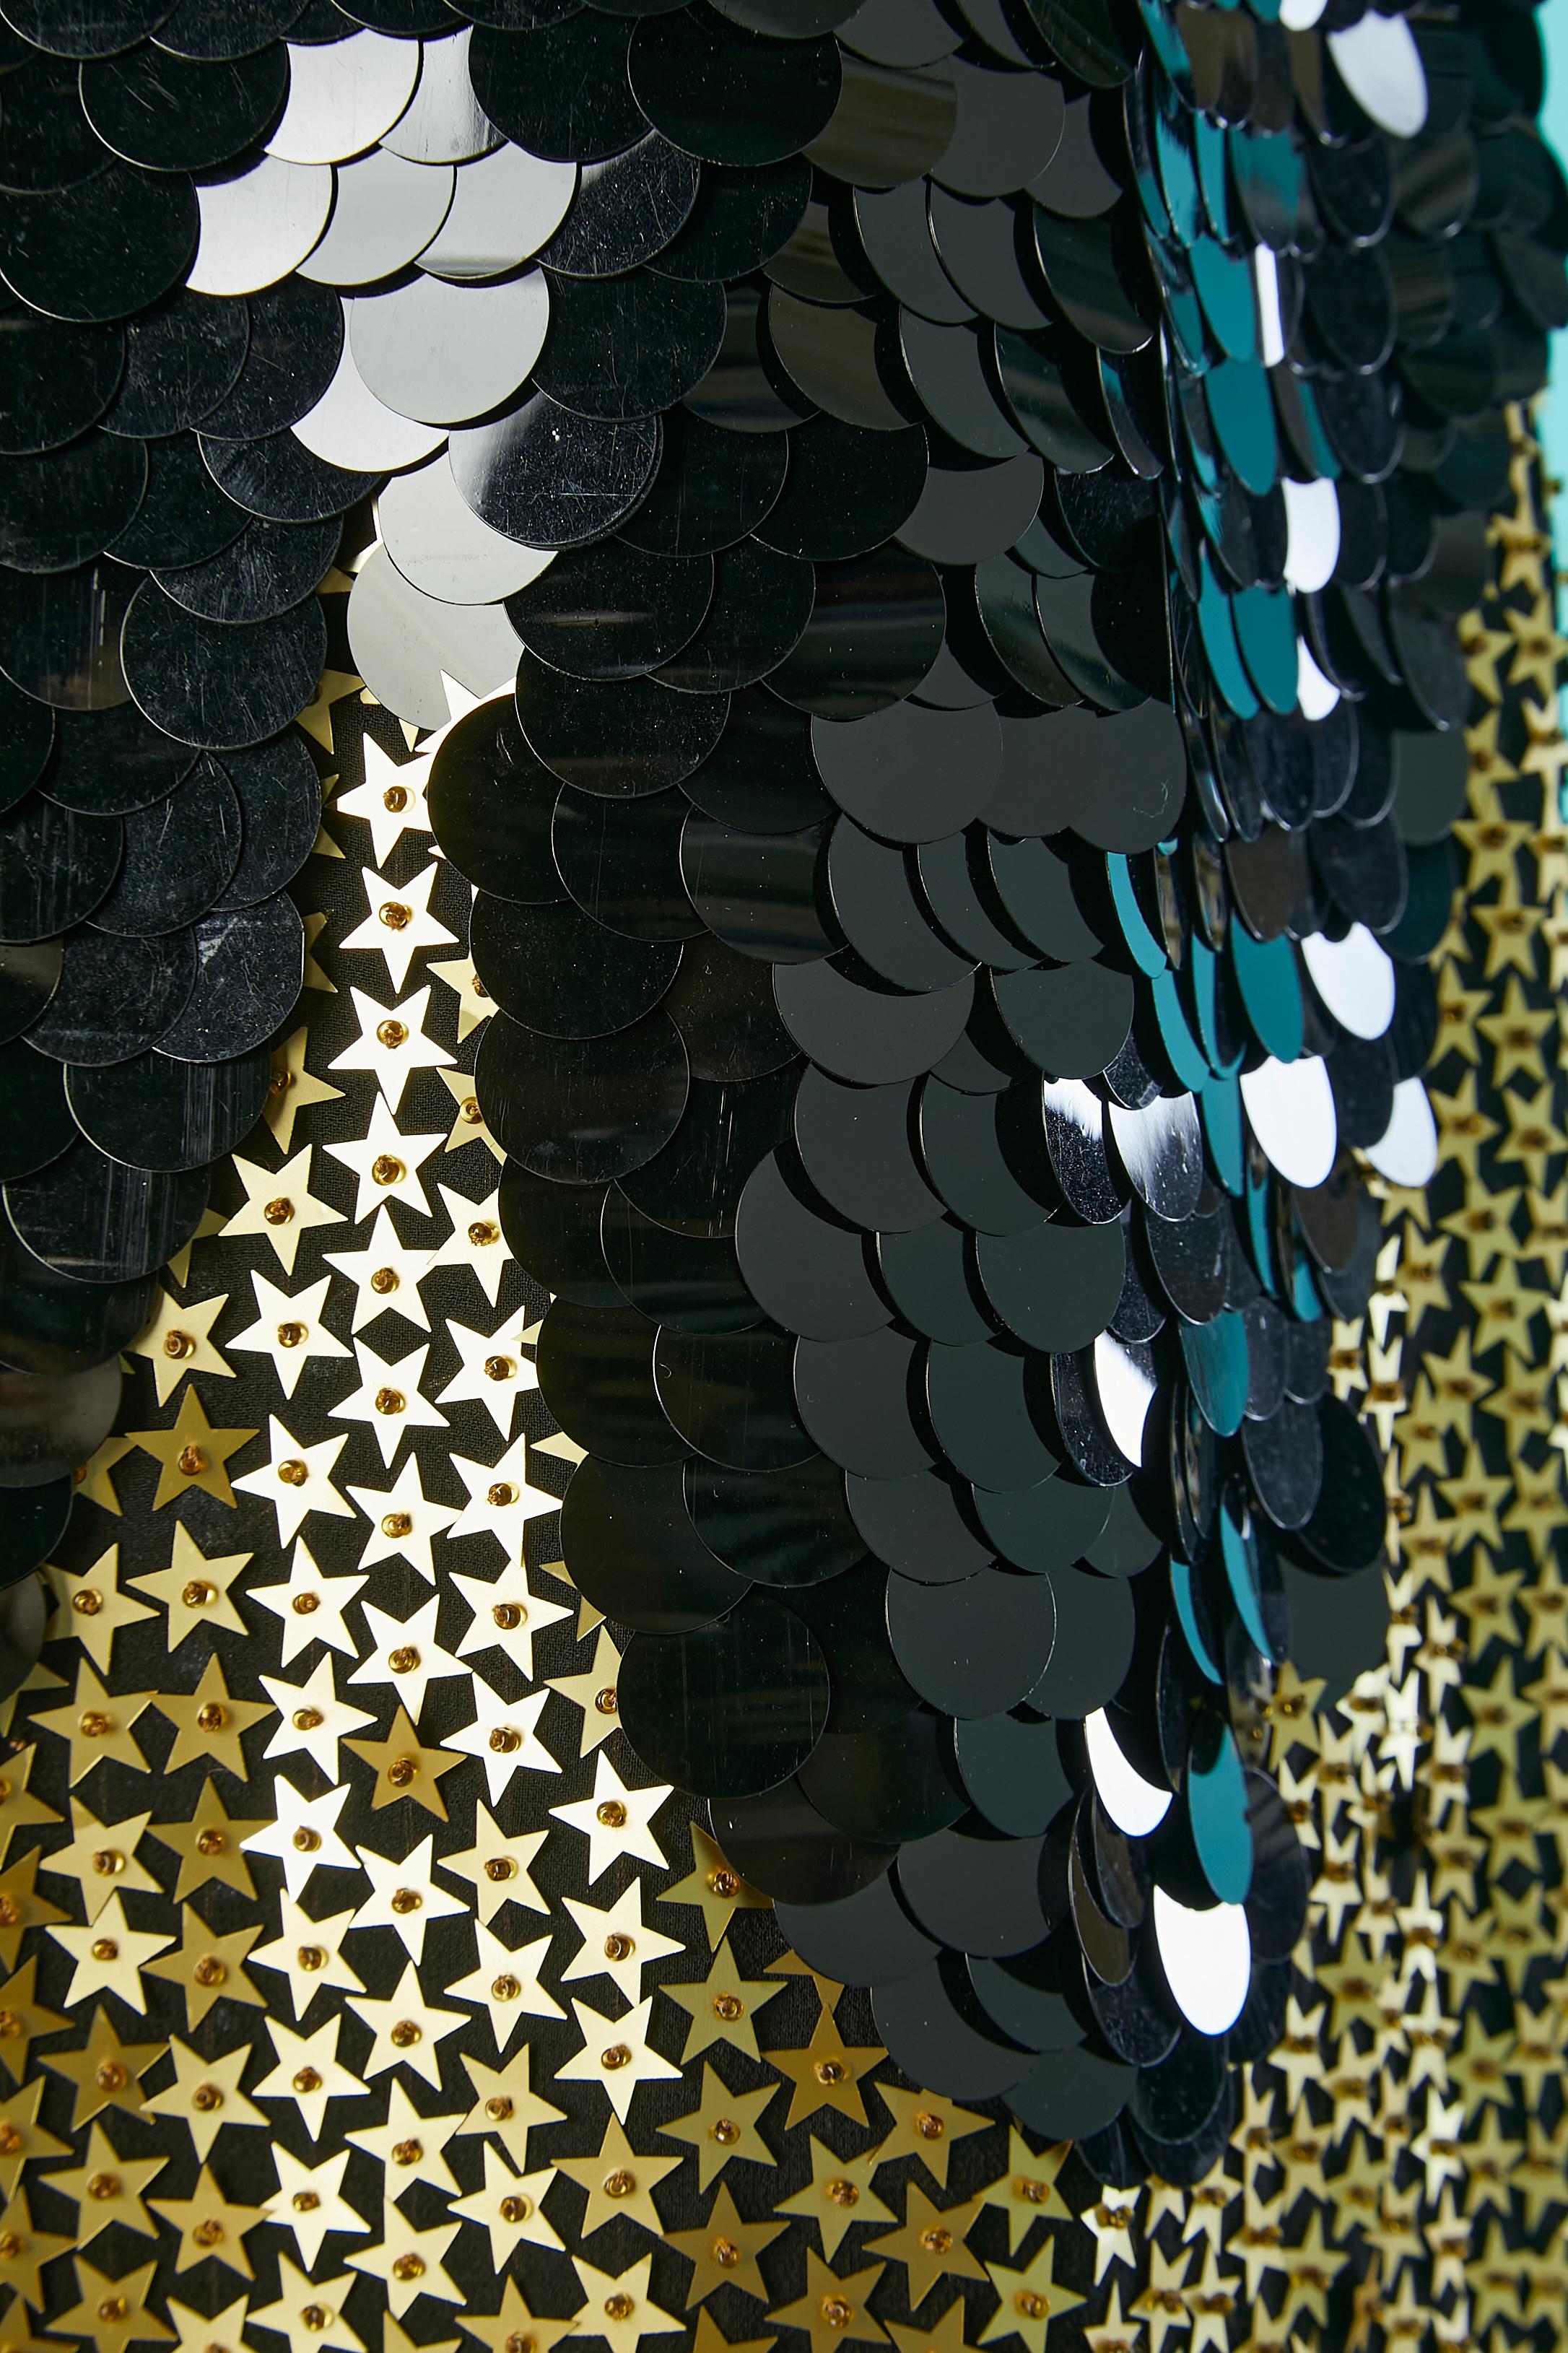 Schwarz-goldenes Pailletten-Cocktailkleid mit Sternchen. 
Reißverschluss auf der linken Seite. Hauptmaterial: Seide
Futter: Polyester
GRÖSSE 40 (Fr) 8 (Us) 